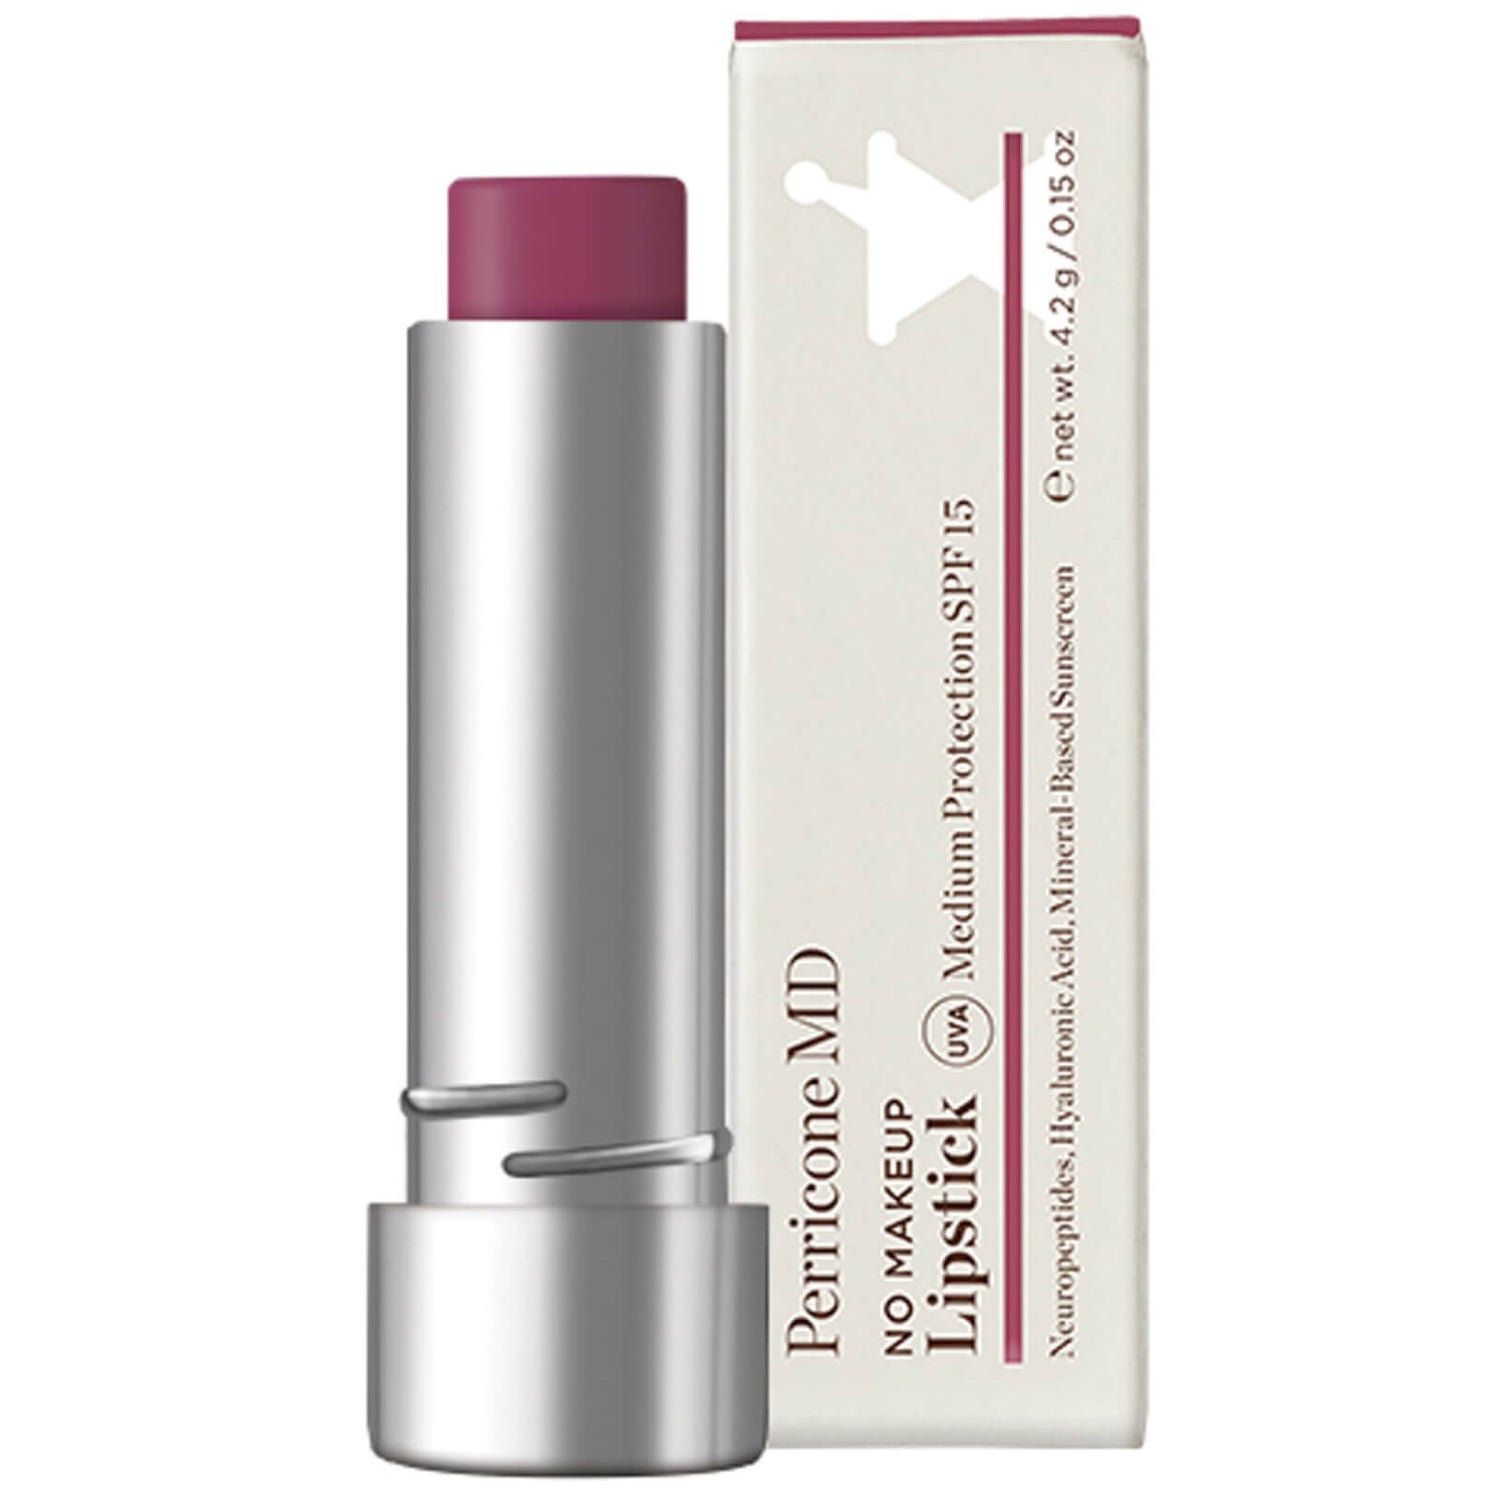 페리콘 MD 노 메이크업 립스틱 브로드 스펙트럼 SPF15 4.2g (다양한 색상)